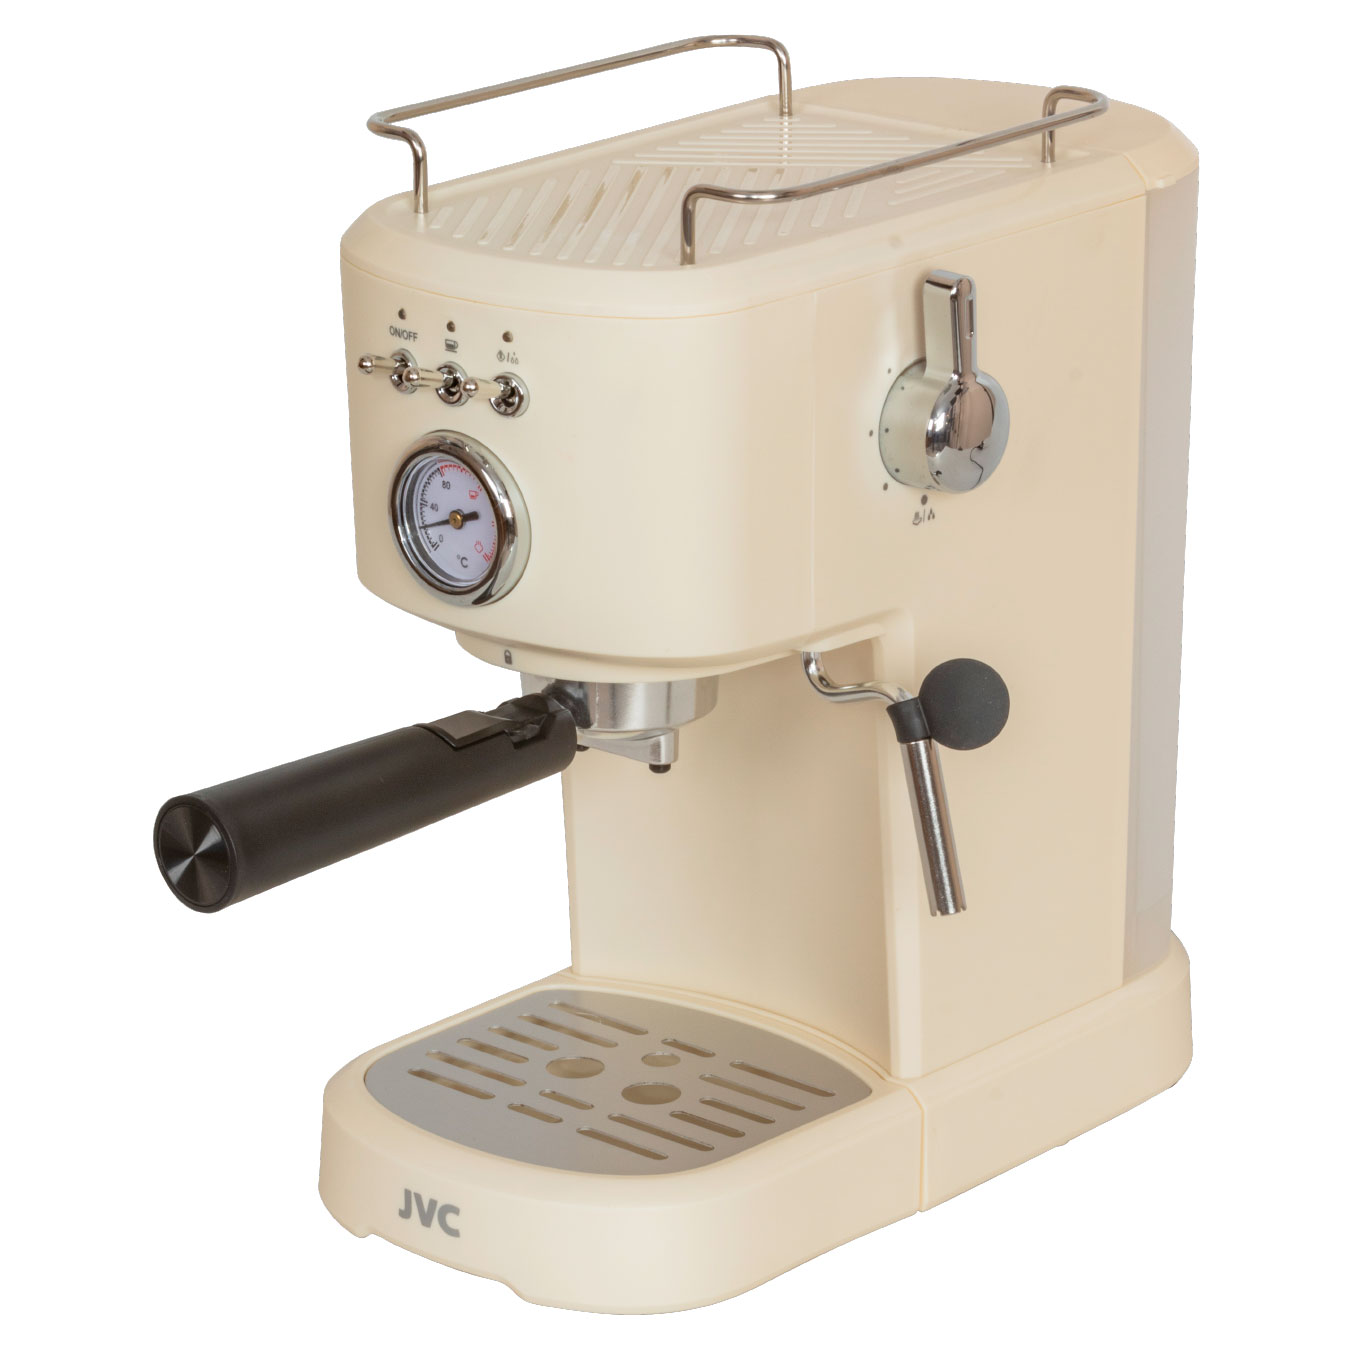 Рожковая кофеварка JVC JK-CF32 бежевая рожковая кофеварка virtuoso xp444c10